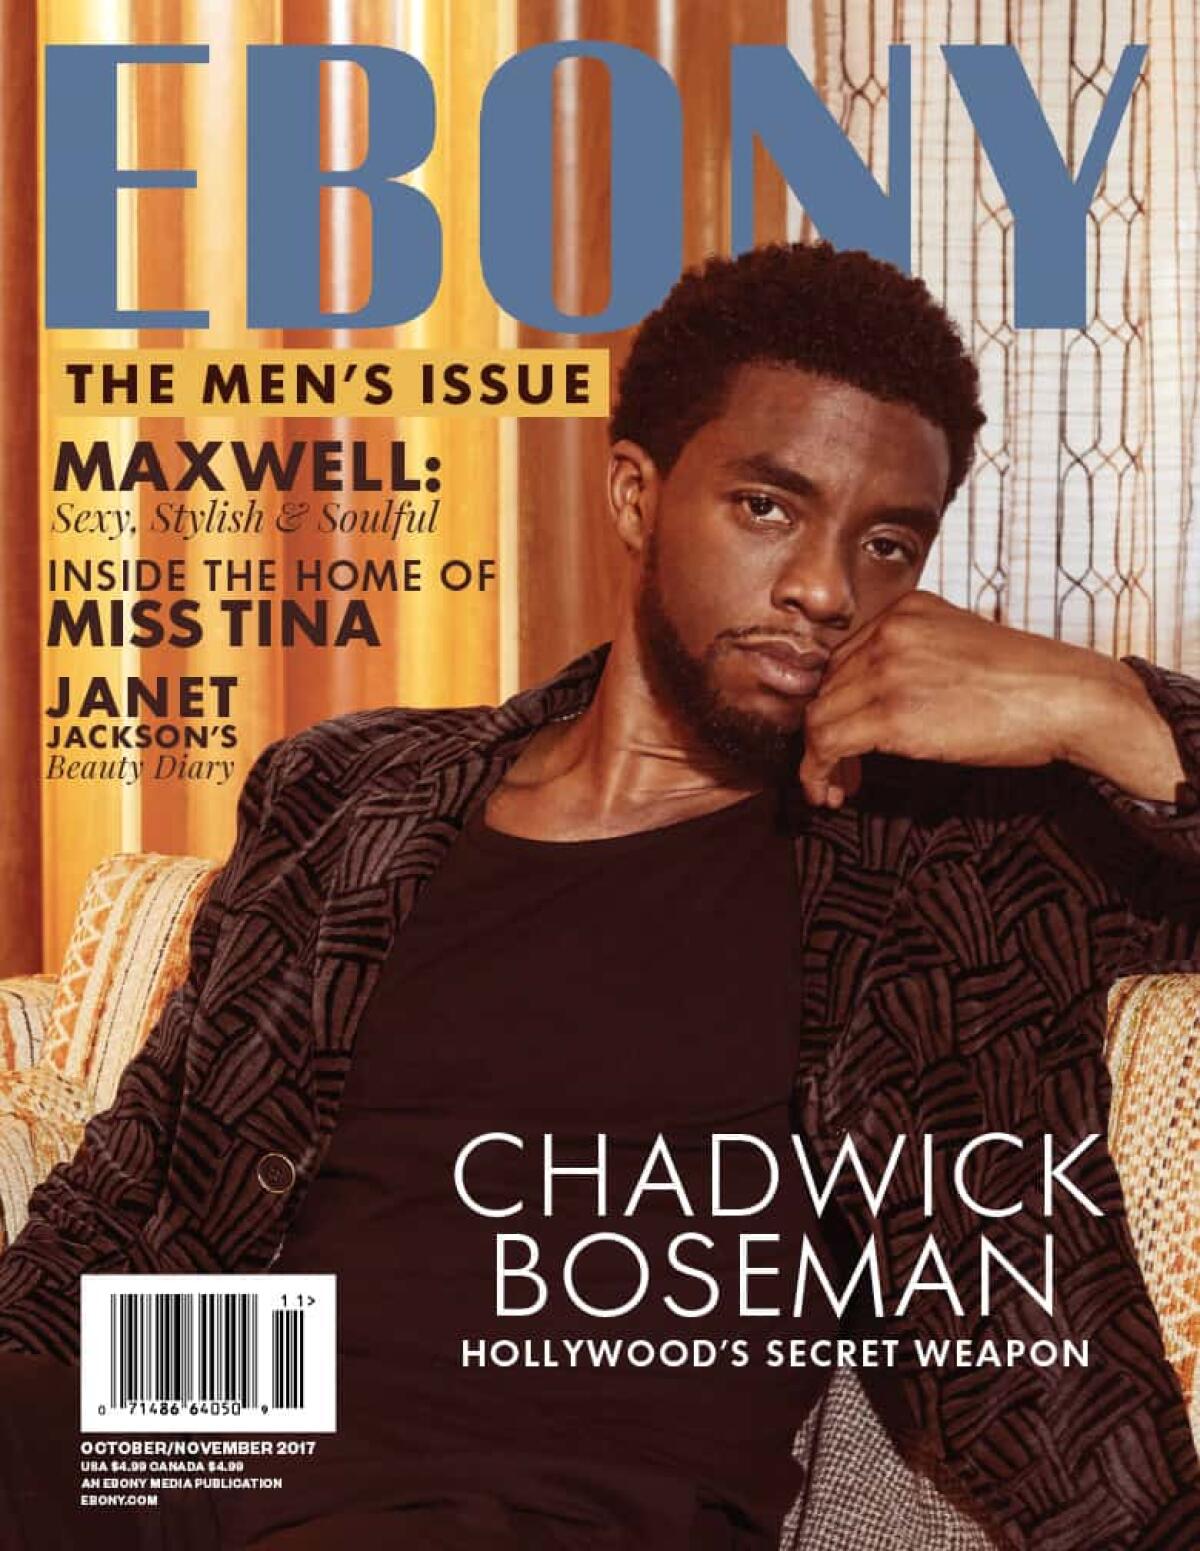 A 2017 Chadwick Boseman cover from Ebony magazine.